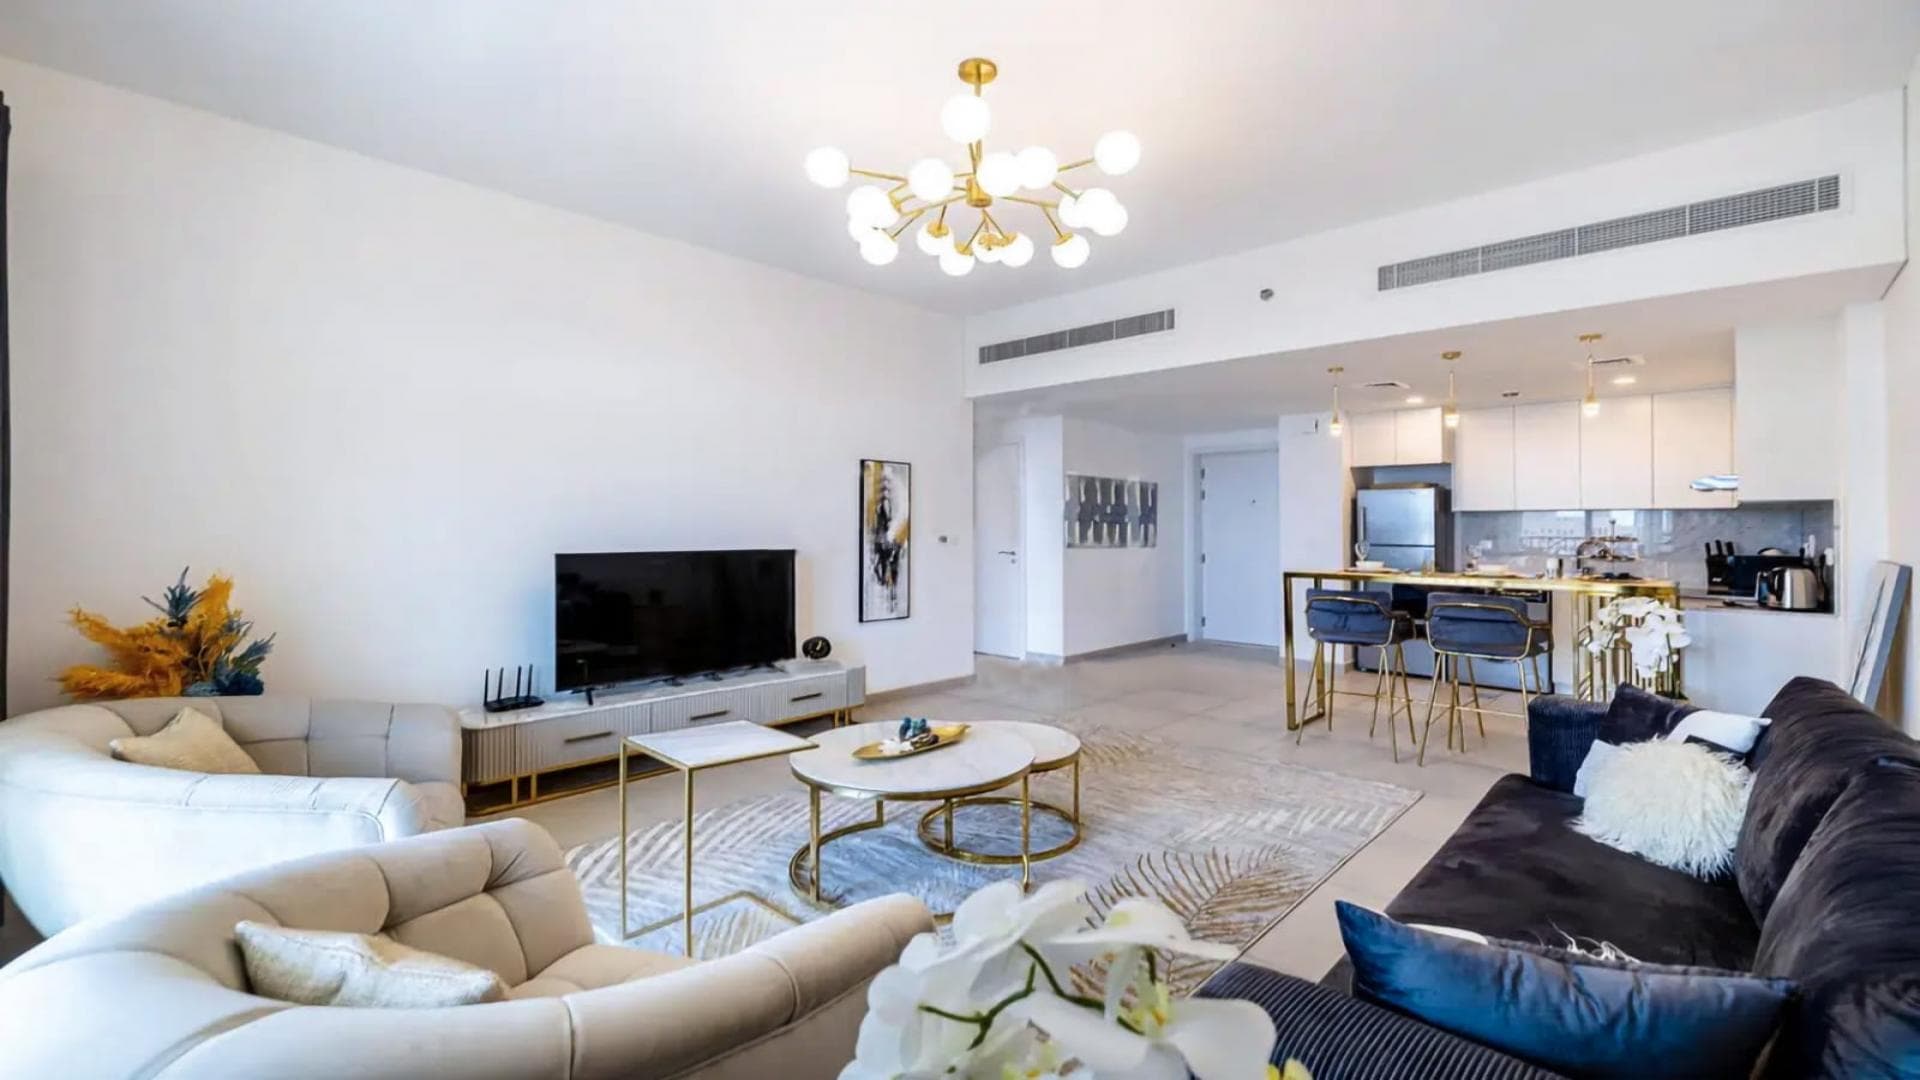 1 Bedroom Apartment For Rent Rahaal Lp36960 24aabffaa930c000.jpeg